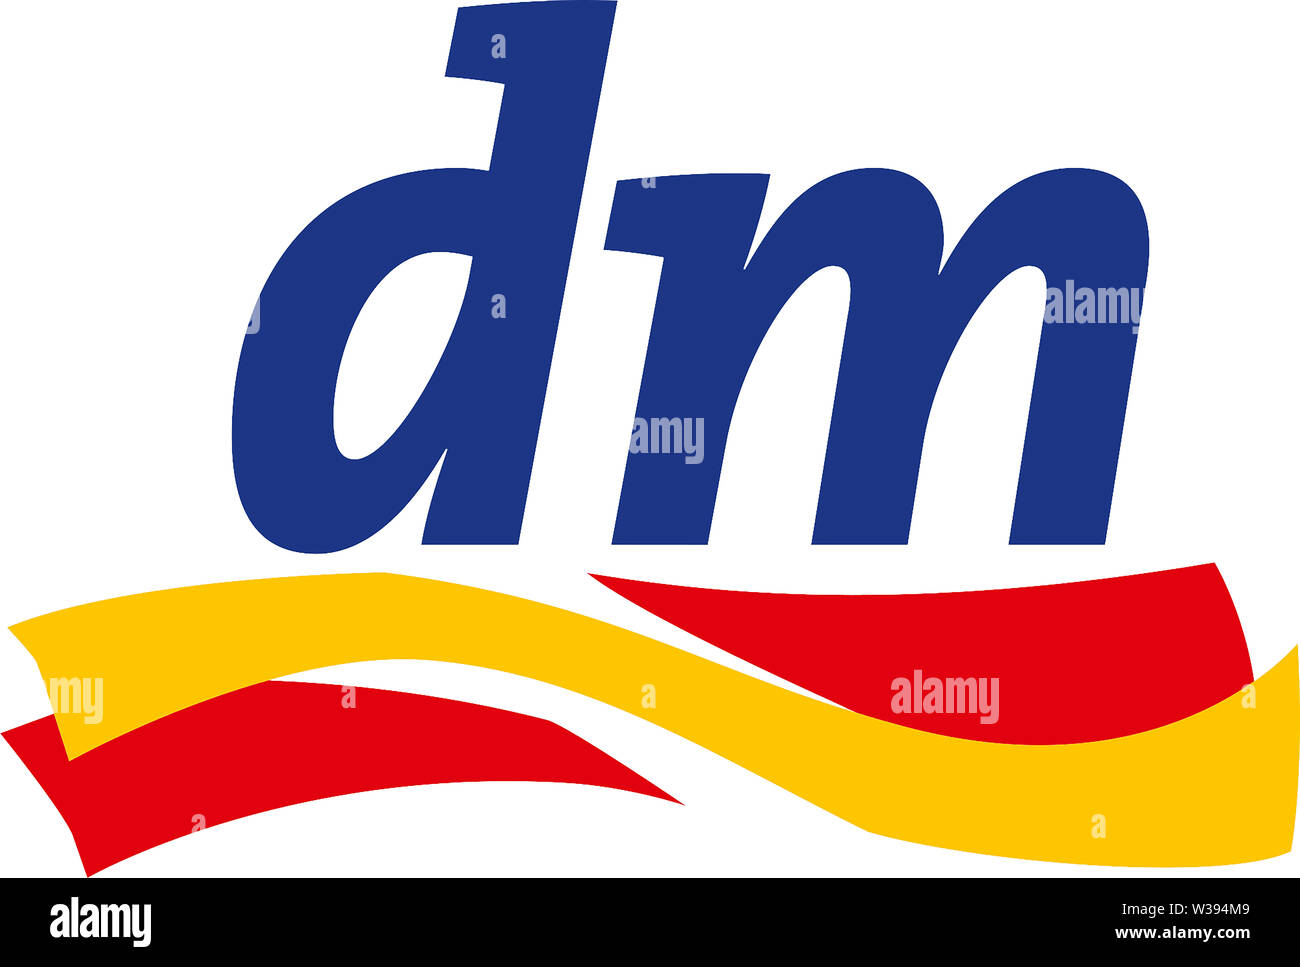 Il logo della farmacia tedesca catena-Dm Drogerie Markt in base a Karlsruhe - Germania. Foto Stock